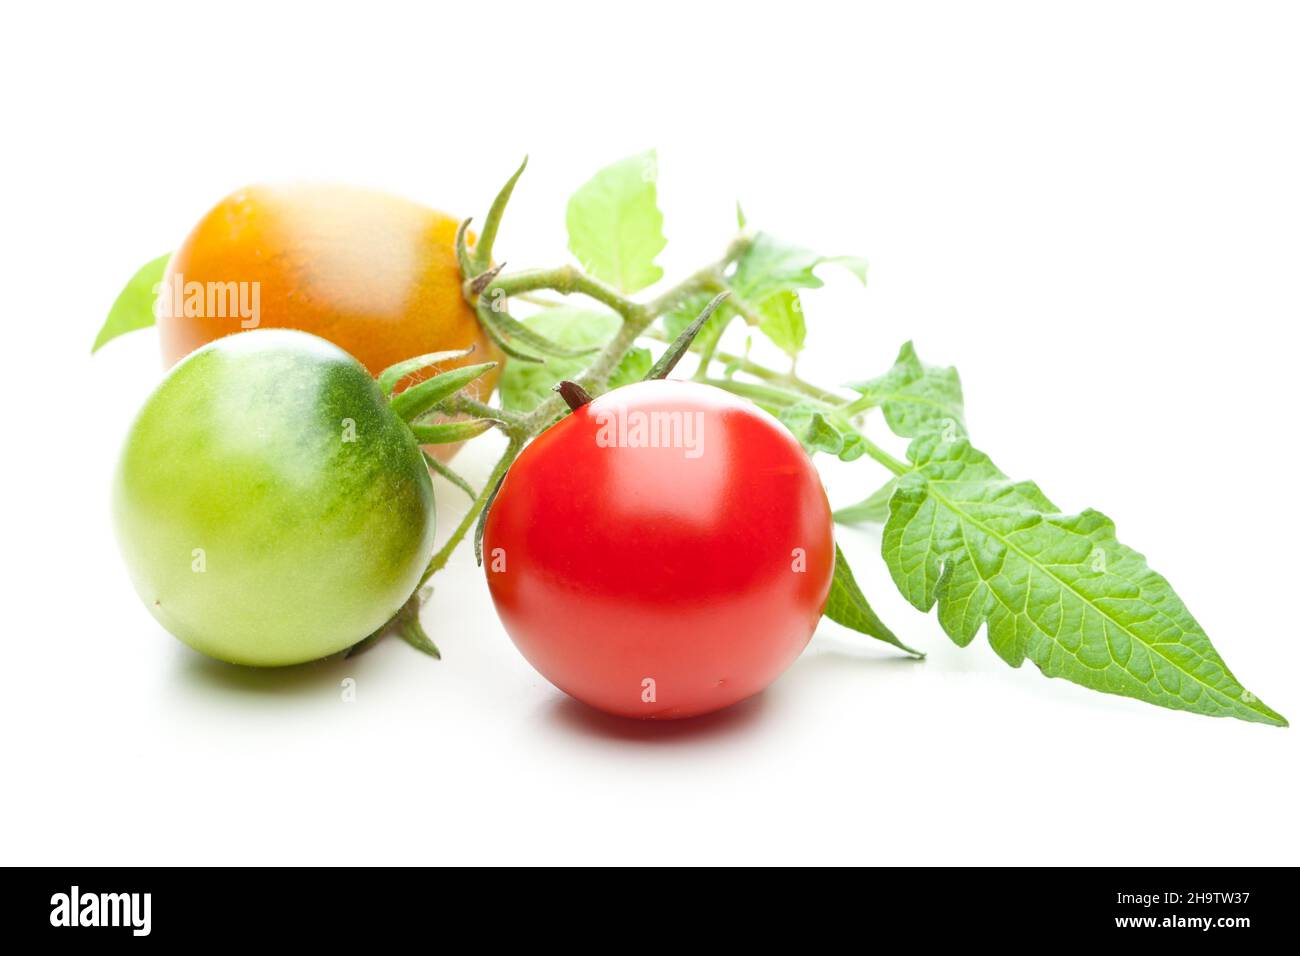 Tomaten, Tomaten, unreif, gelb, grün, Rot, Blatt, weiß, Hintergrund, Gemüse, Reif, Produktion, reifen, wachsen, drei, Zusammen, Seite an Seite, matu Stockfoto